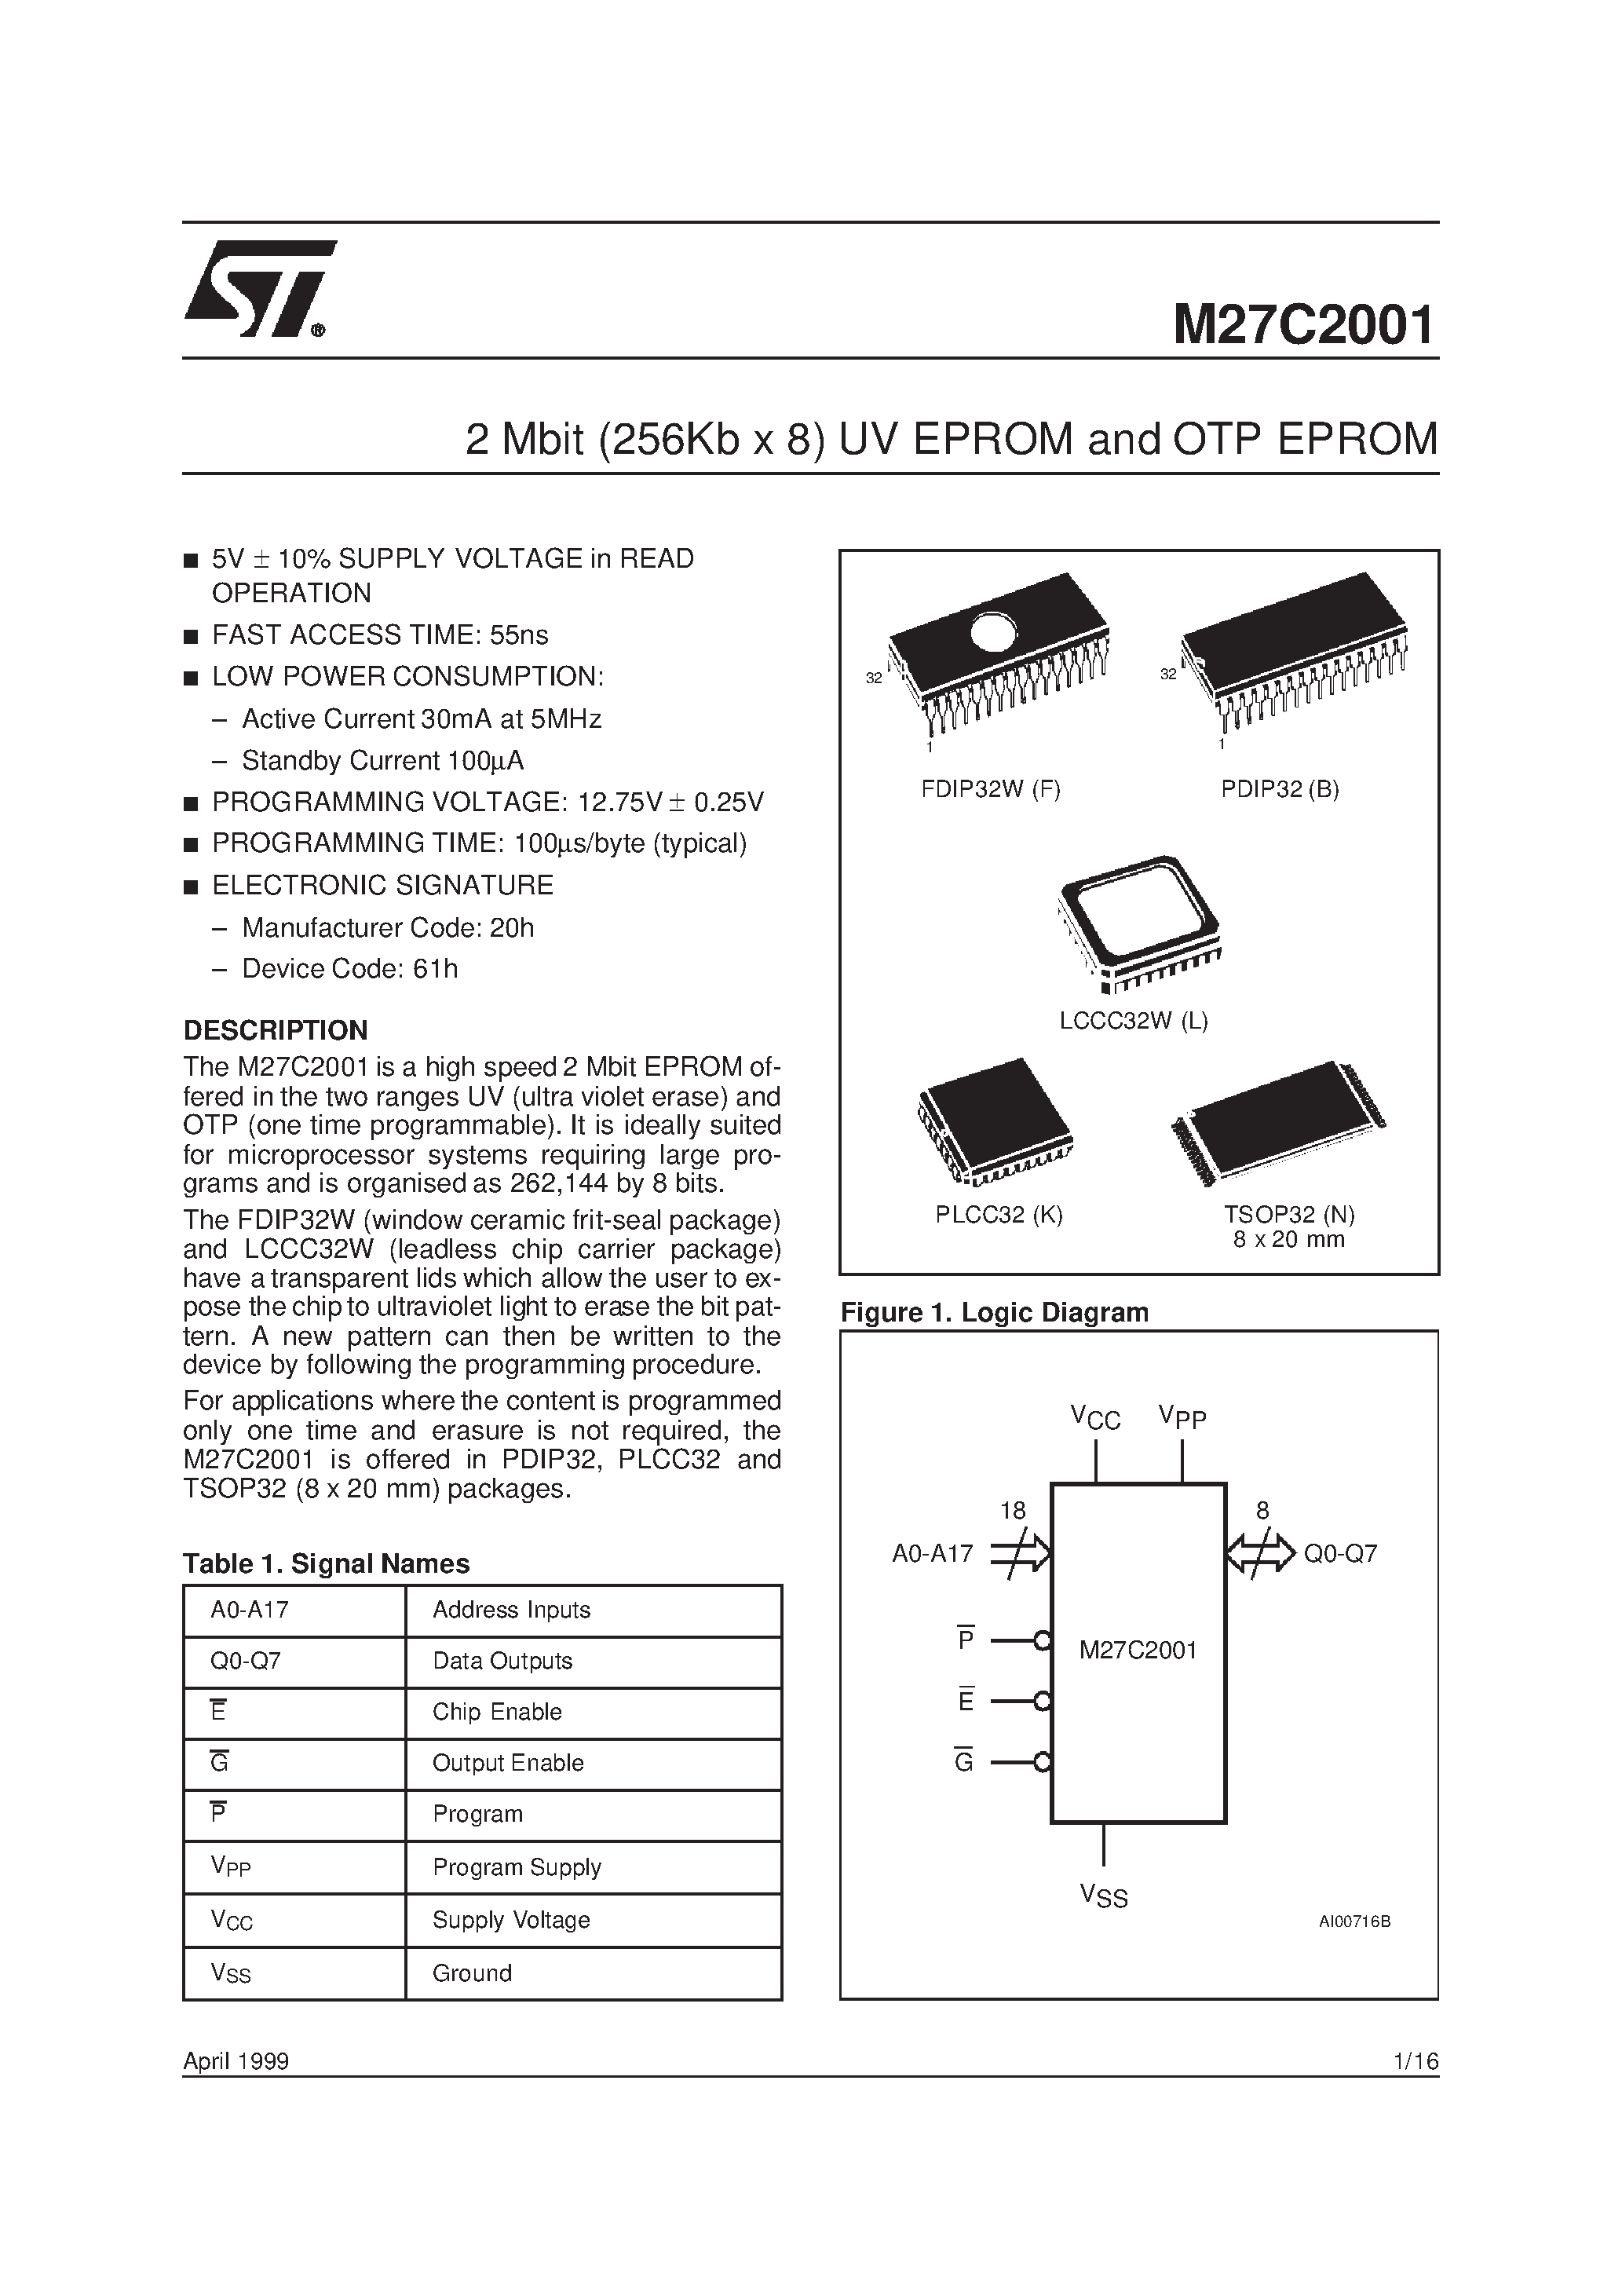 Datasheet M27C2001-10C1TR - 2 Mbit 256Kb x 8 UV EPROM and OTP EPROM page 1